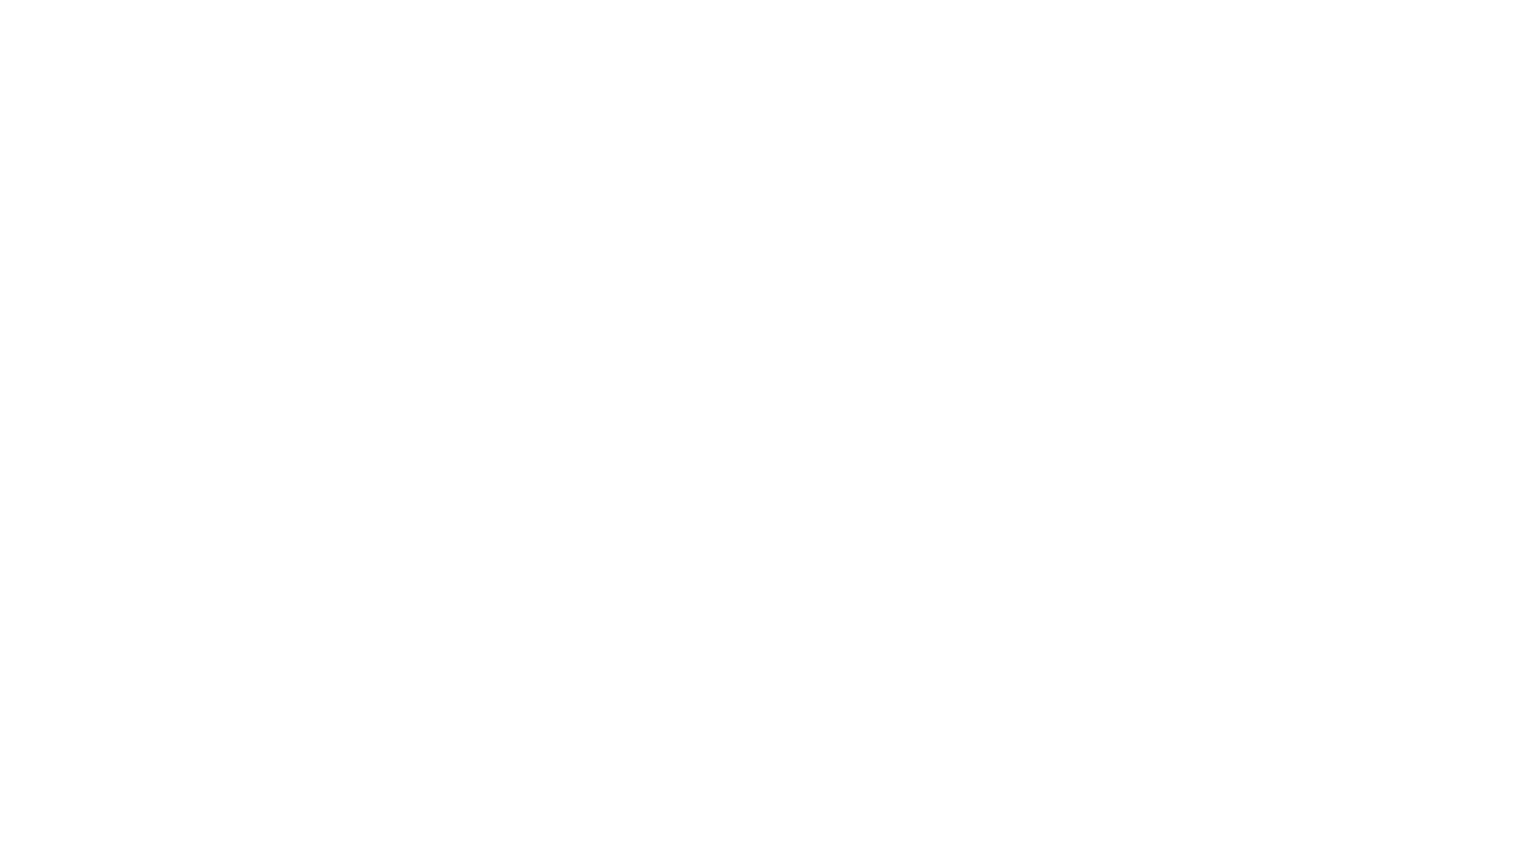 Ocugen logo large for dark backgrounds (transparent PNG)